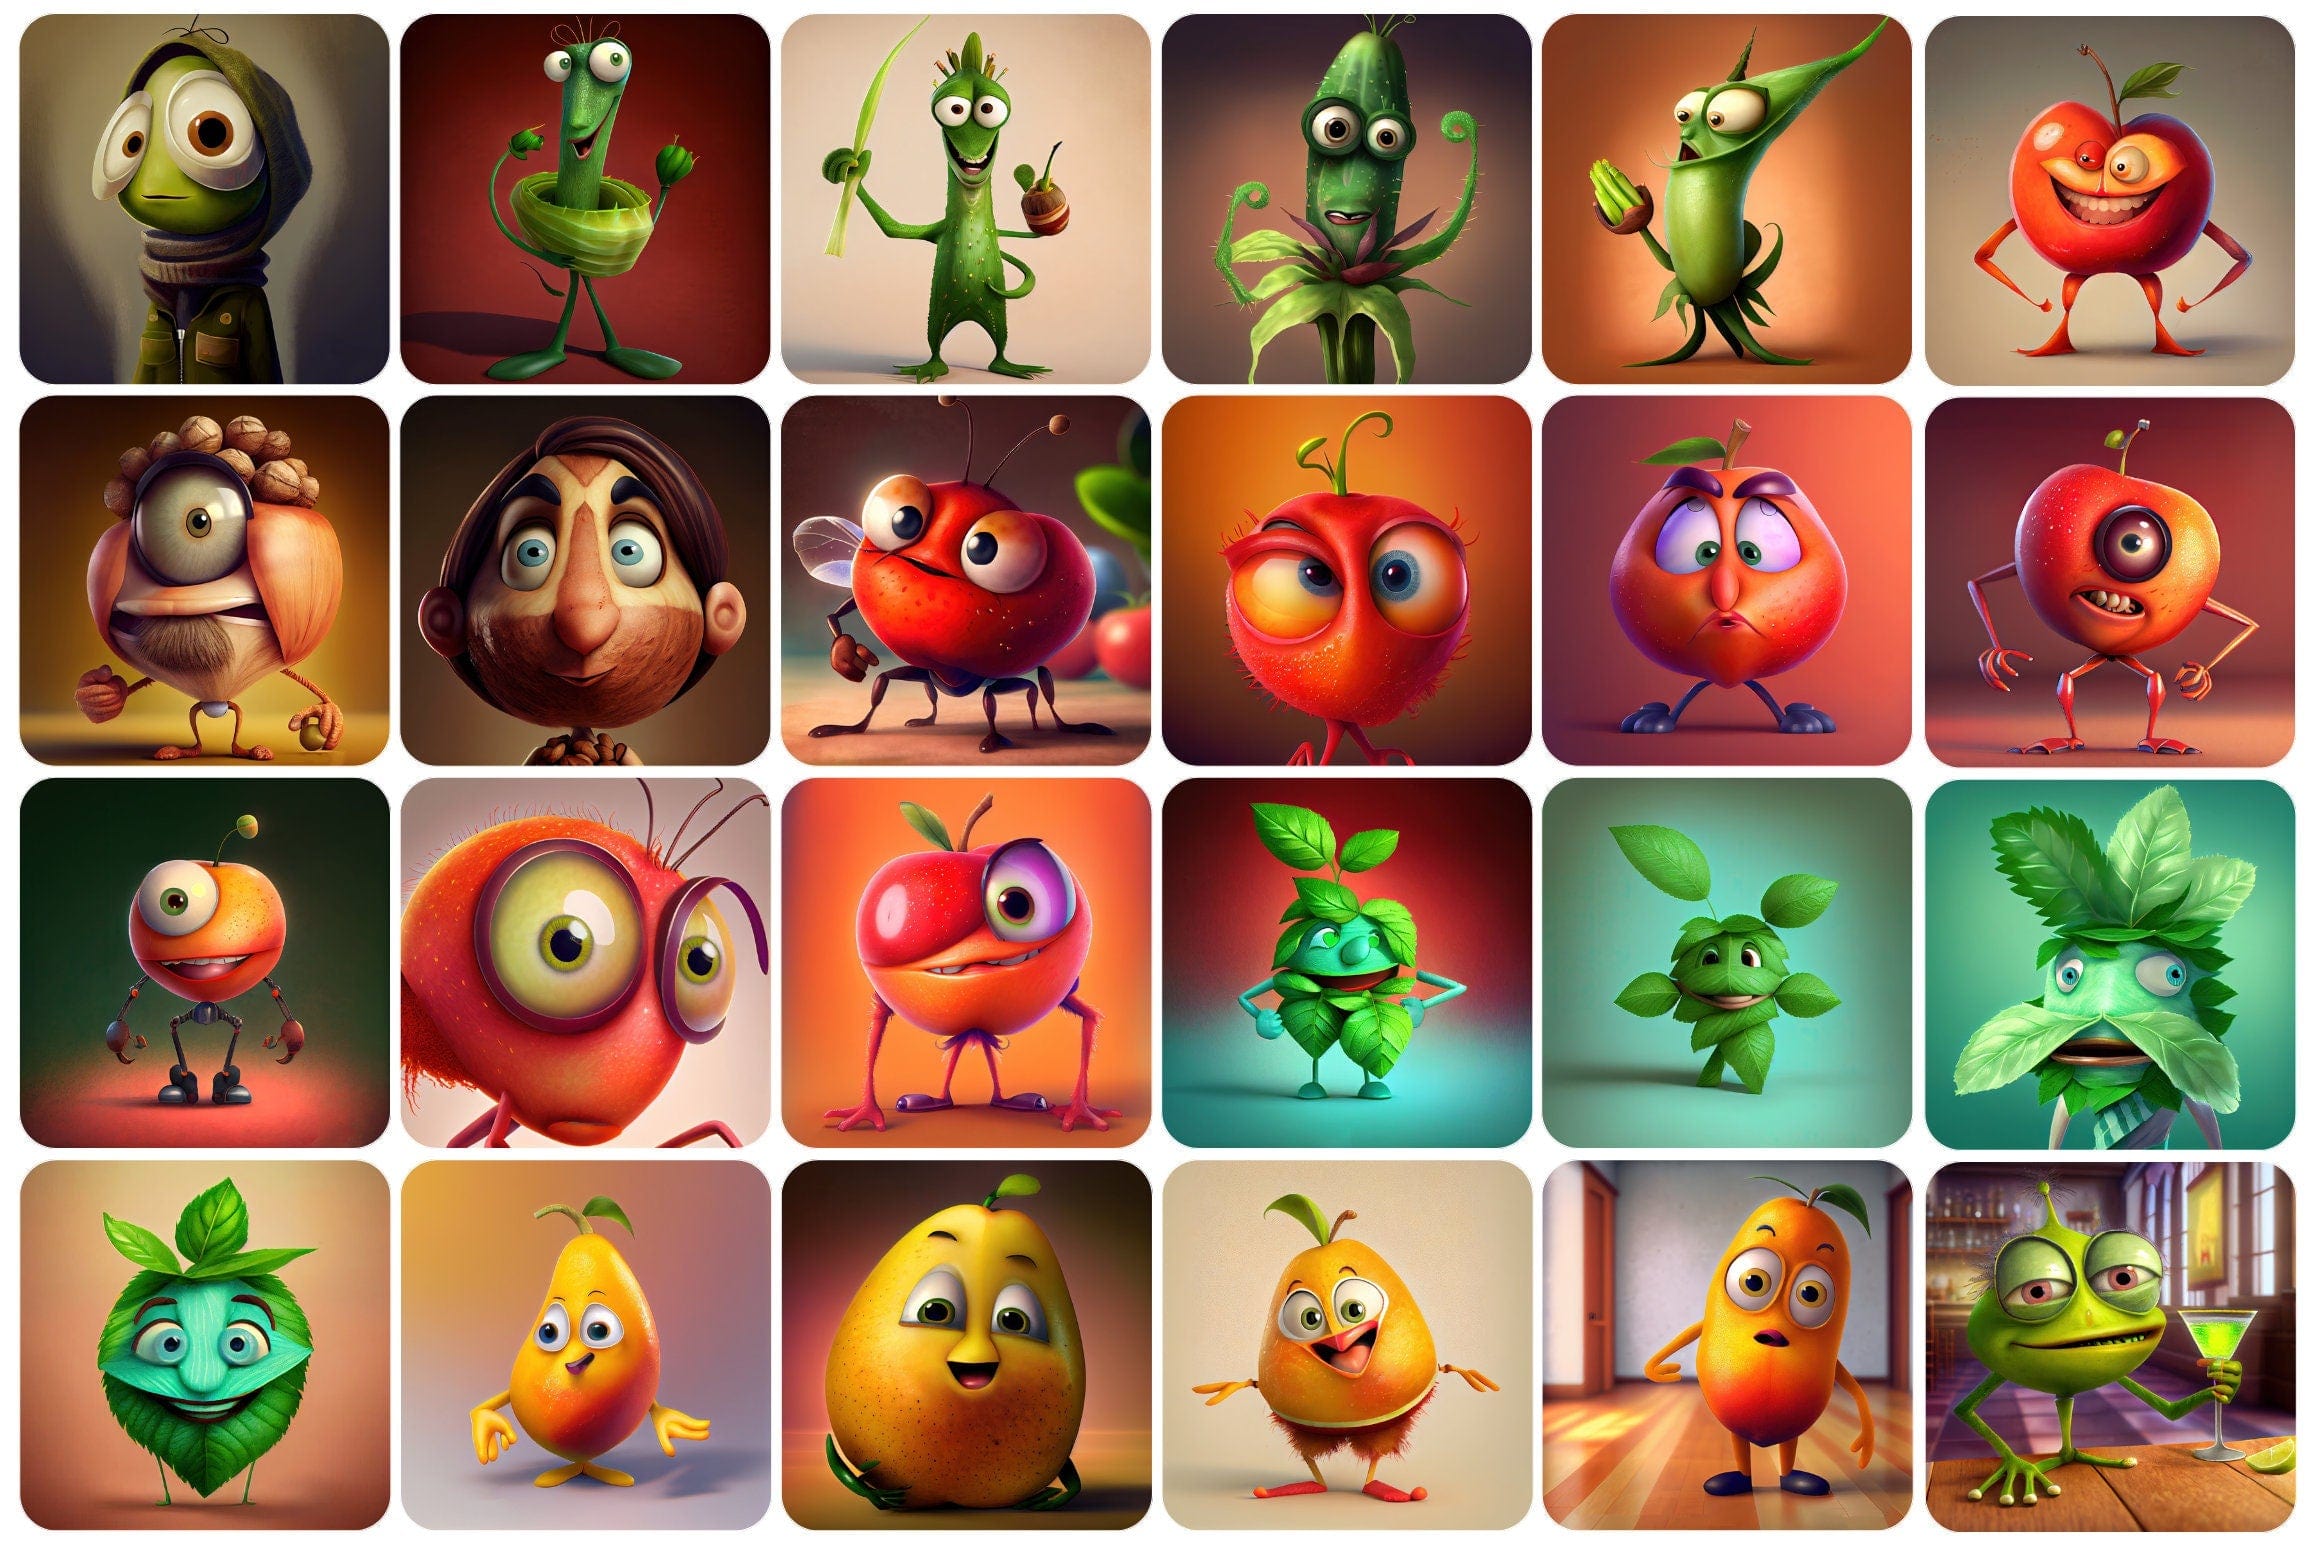 360 Funny fruits and vegetables, Printable Funny Fruit & Vegetable Designs - Commercial license Digital Download Sumobundle